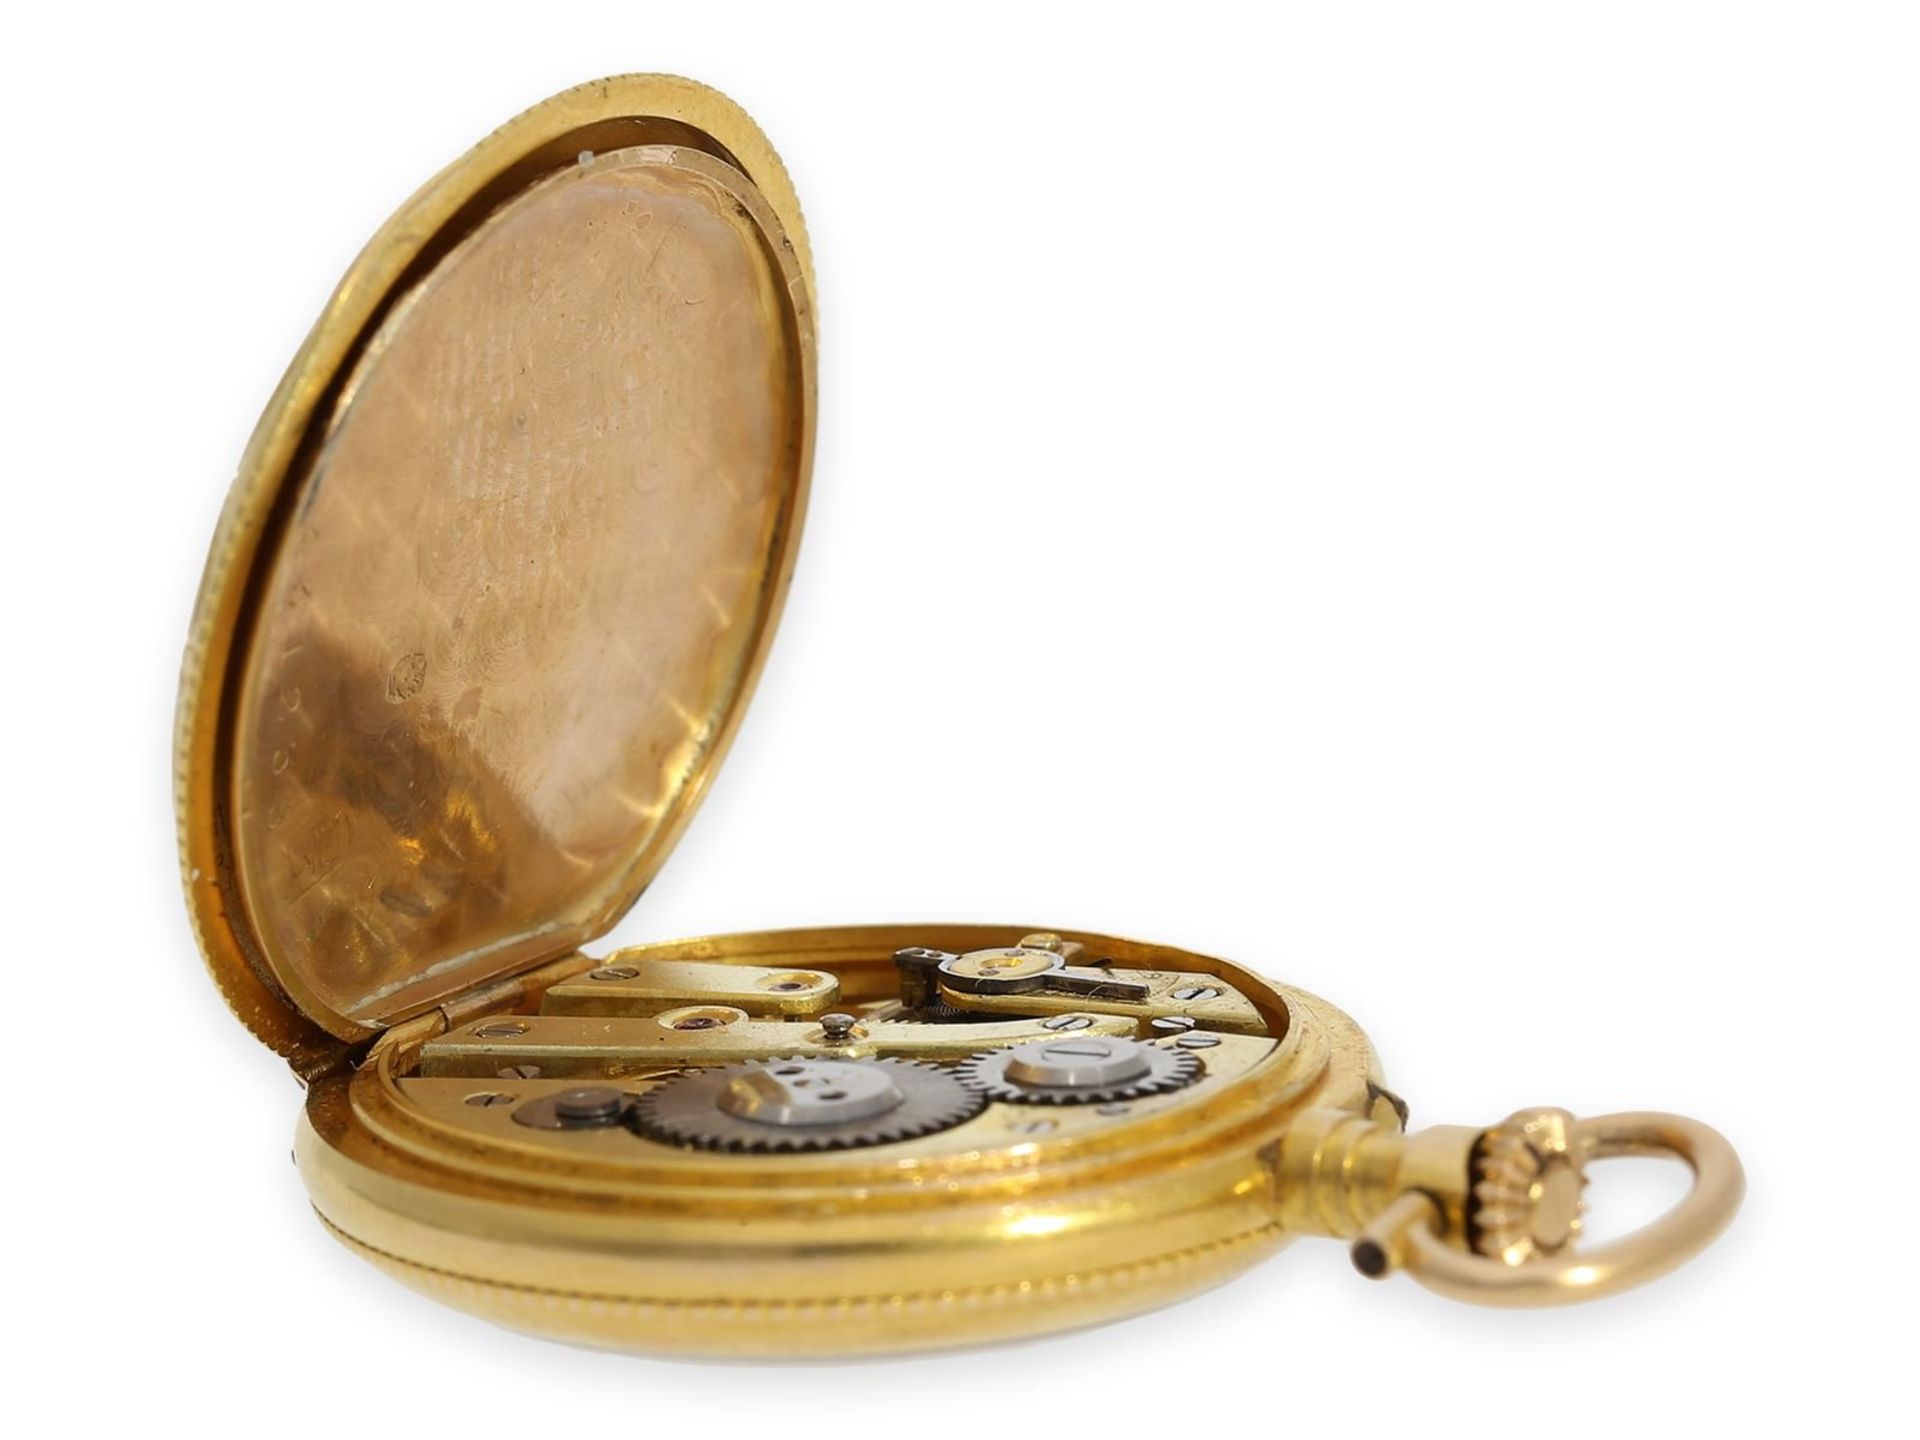 Taschenuhr/Anhängeuhr: exquisite Art Nouveau Gold/Emaille-Damenuhr mit Diamantbesatz, Spitzenqualitä - Bild 4 aus 5